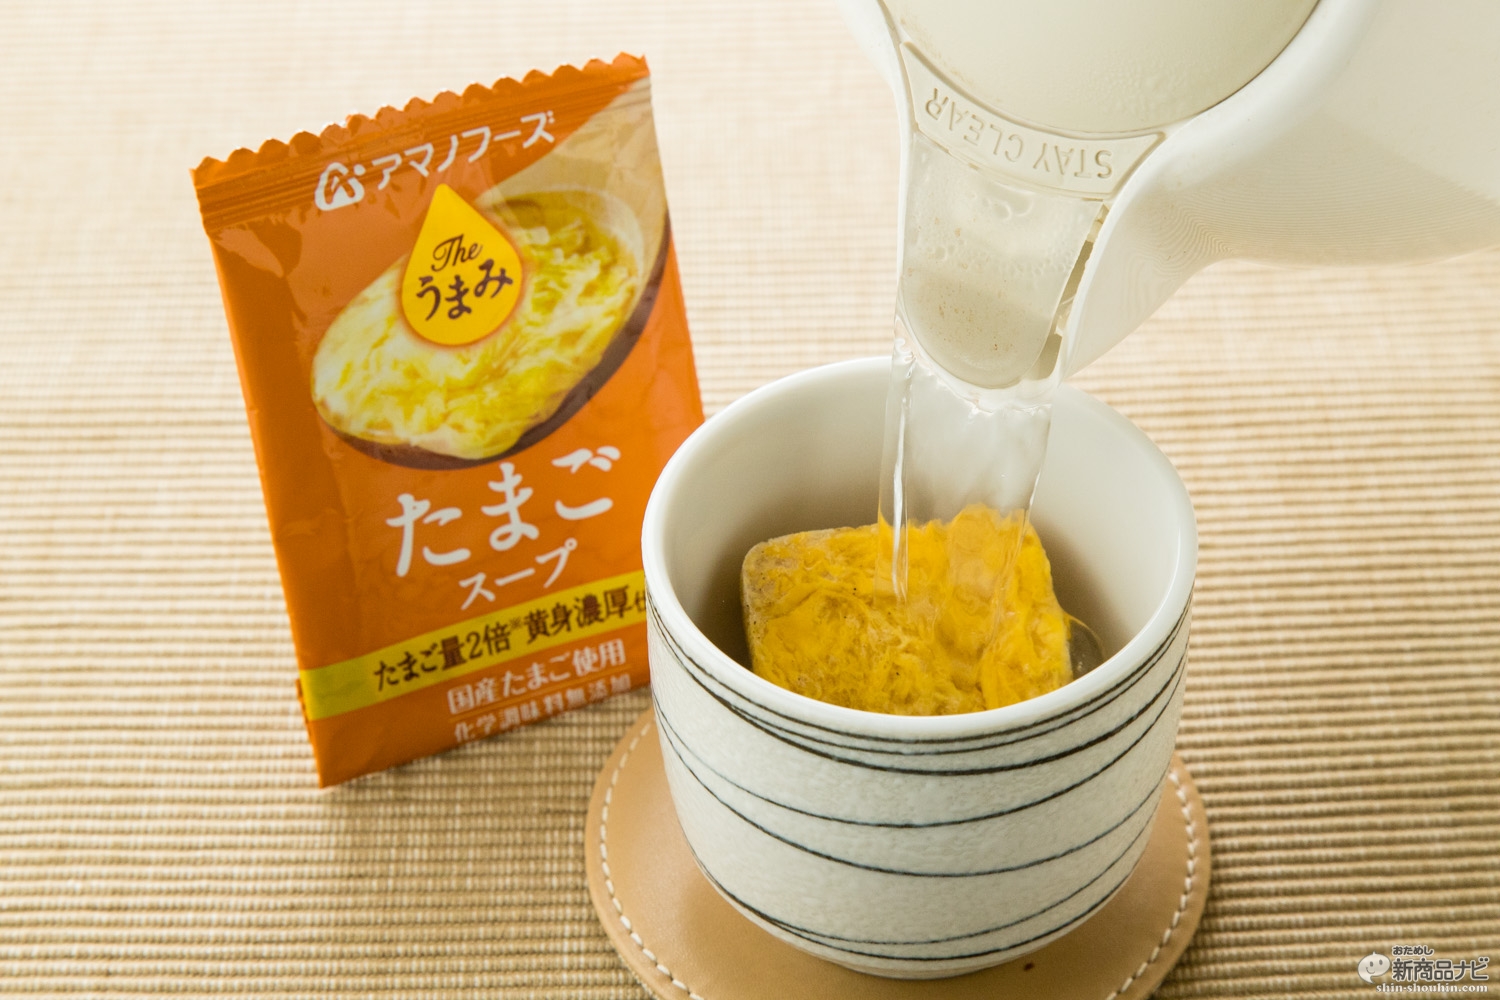 おためし新商品ナビ » Blog Archive » 日本が世界に誇るUMAMIに着目した無添加フリーズドライスープ『The うまみ たまごスープ /  海藻スープ』